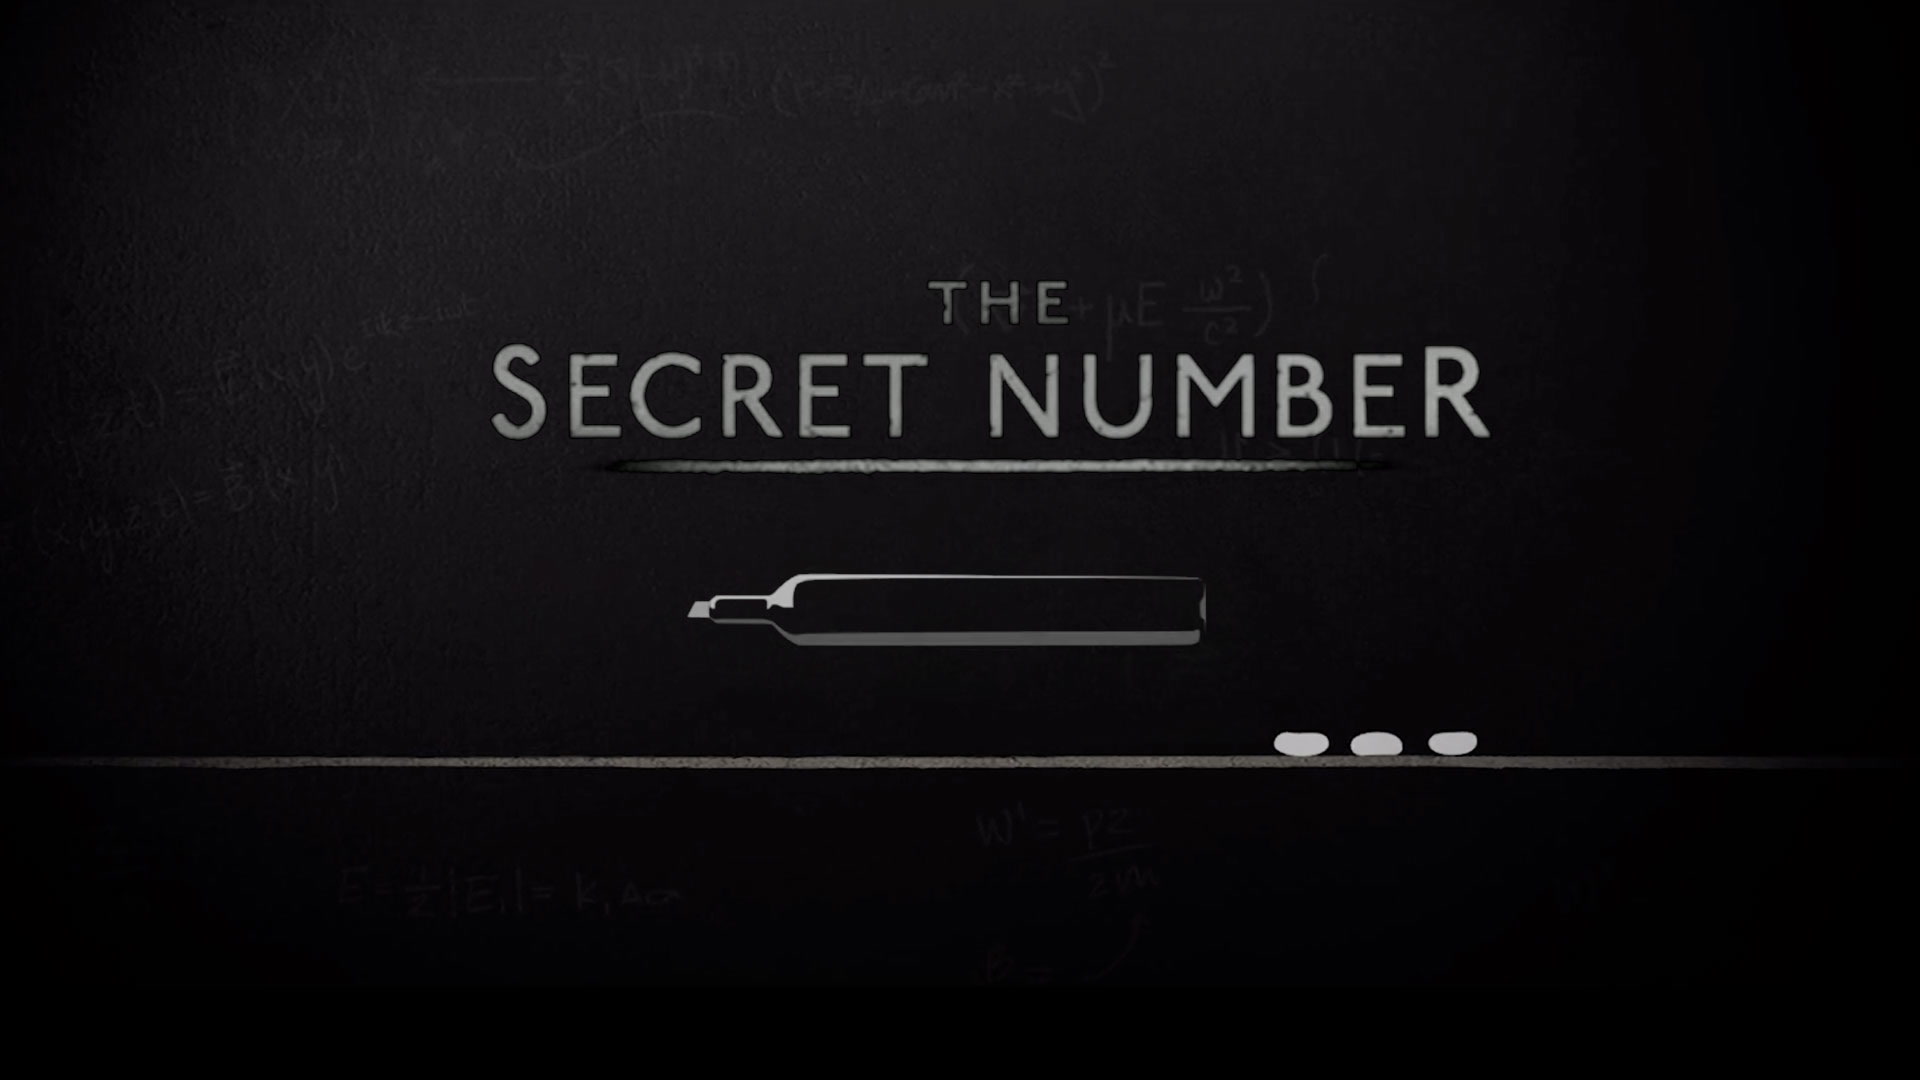 The Secret Number